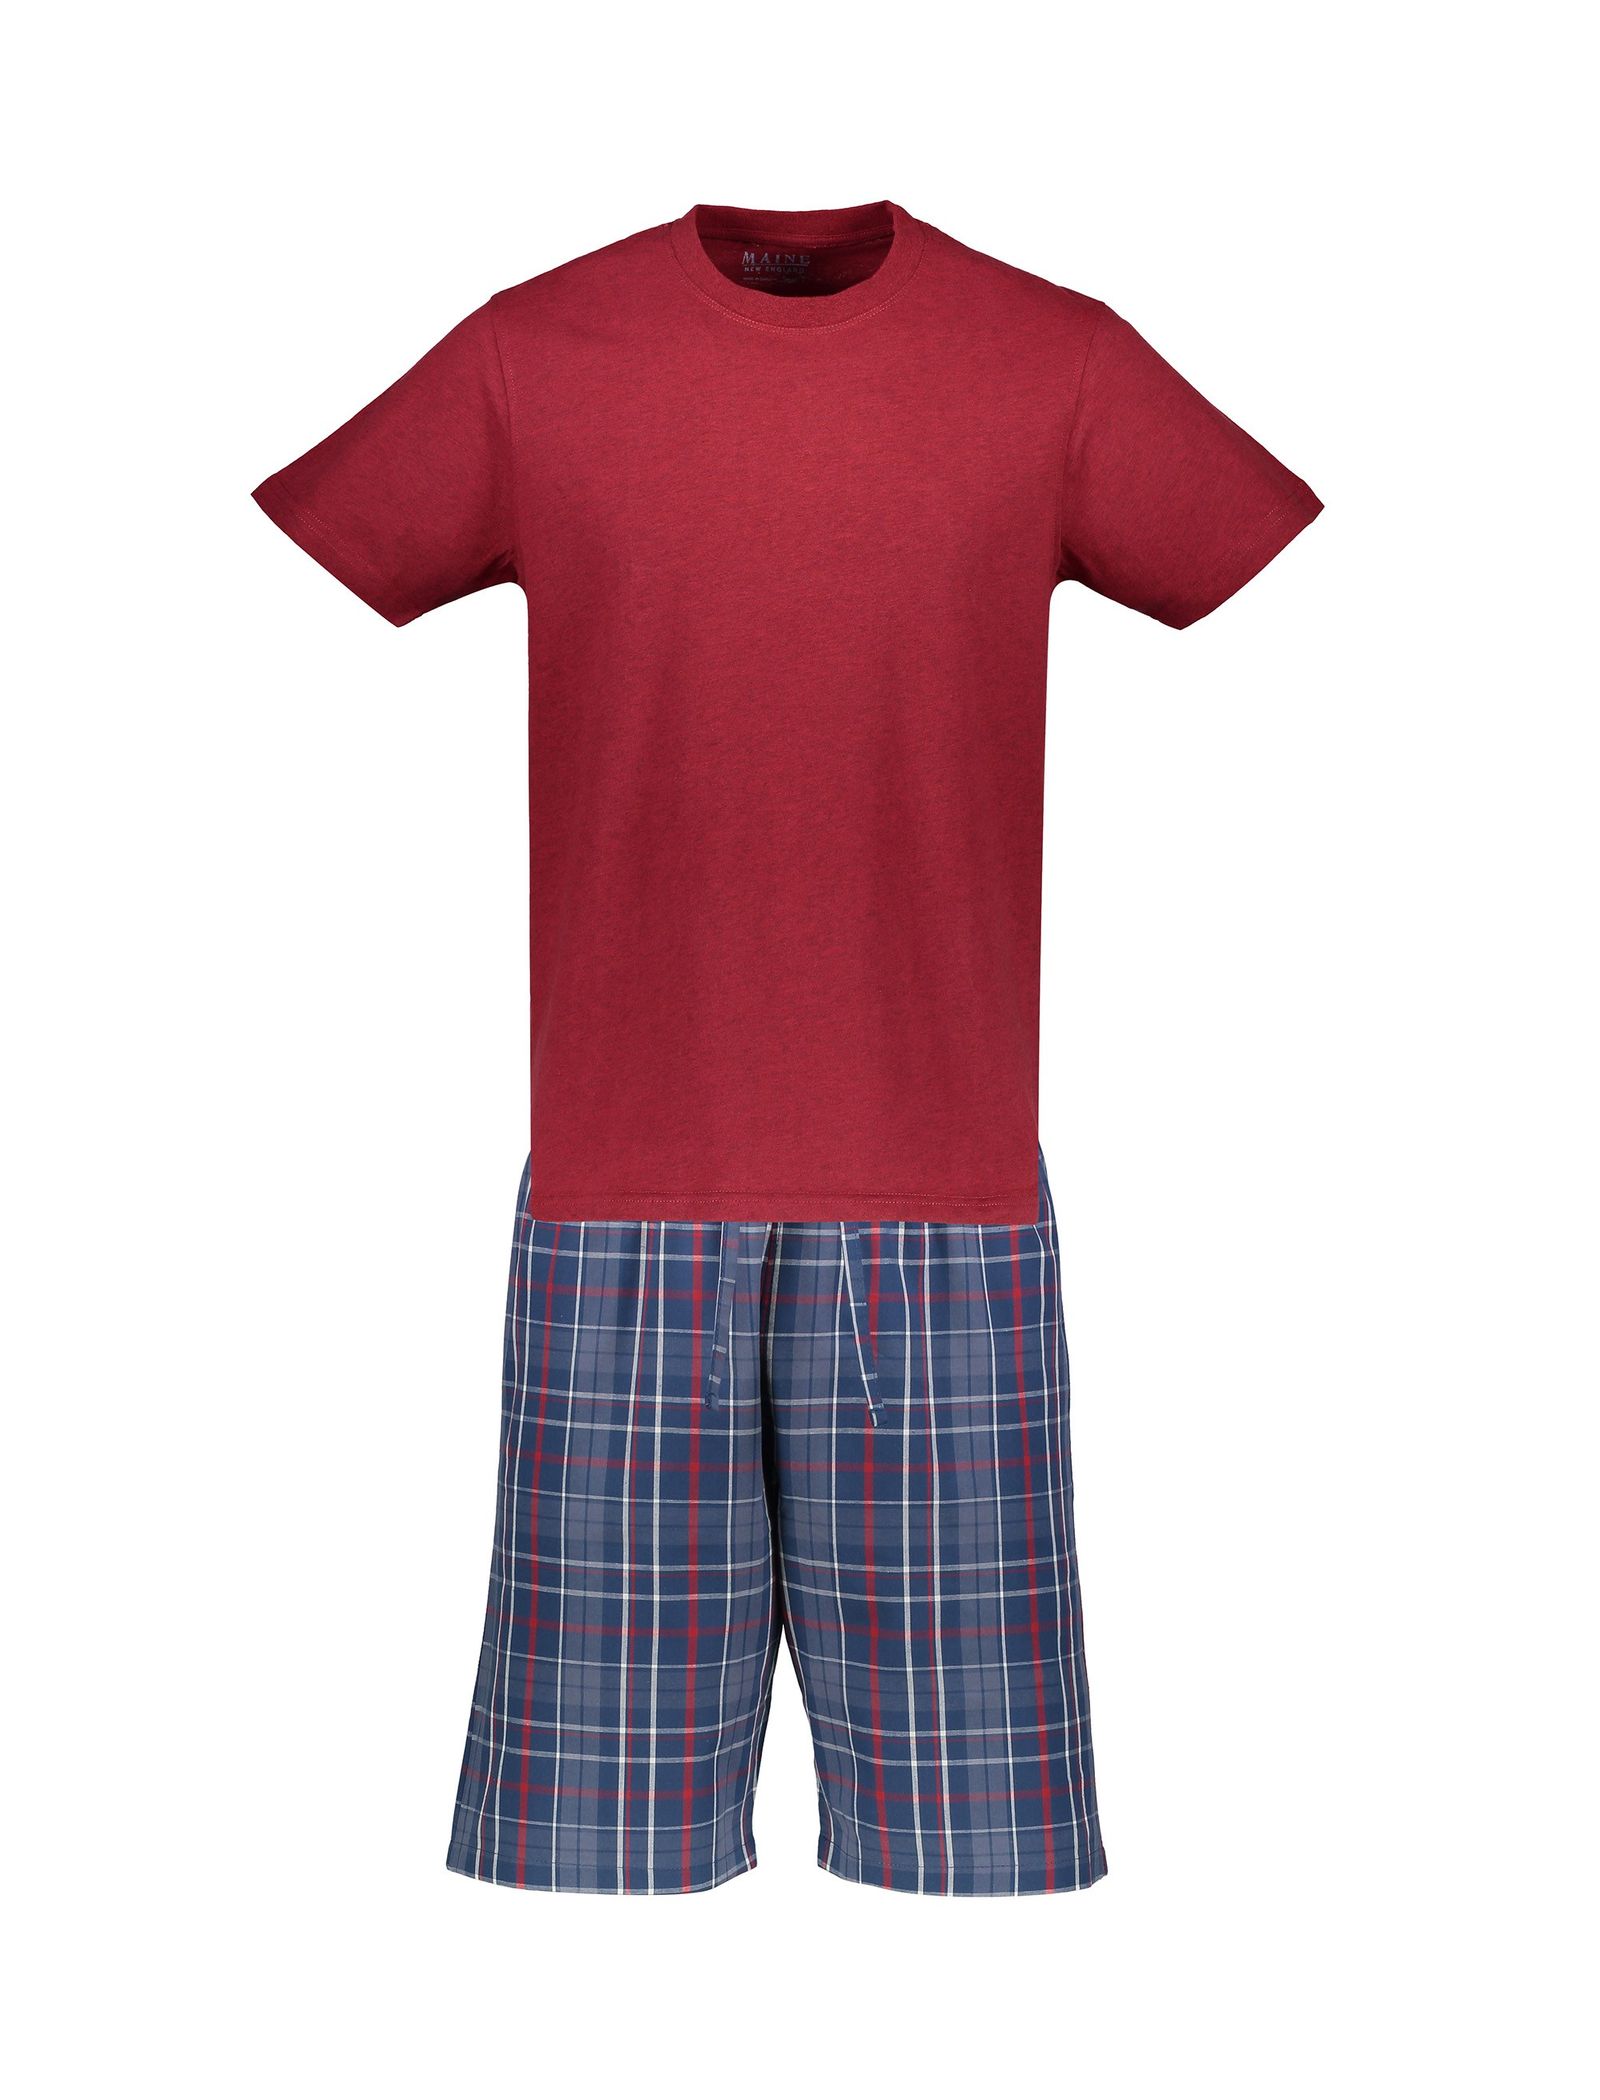 تی شرت و شلوارک راحتی نخی مردانه - مین نیو اینگلند - قرمز و آبي - 1